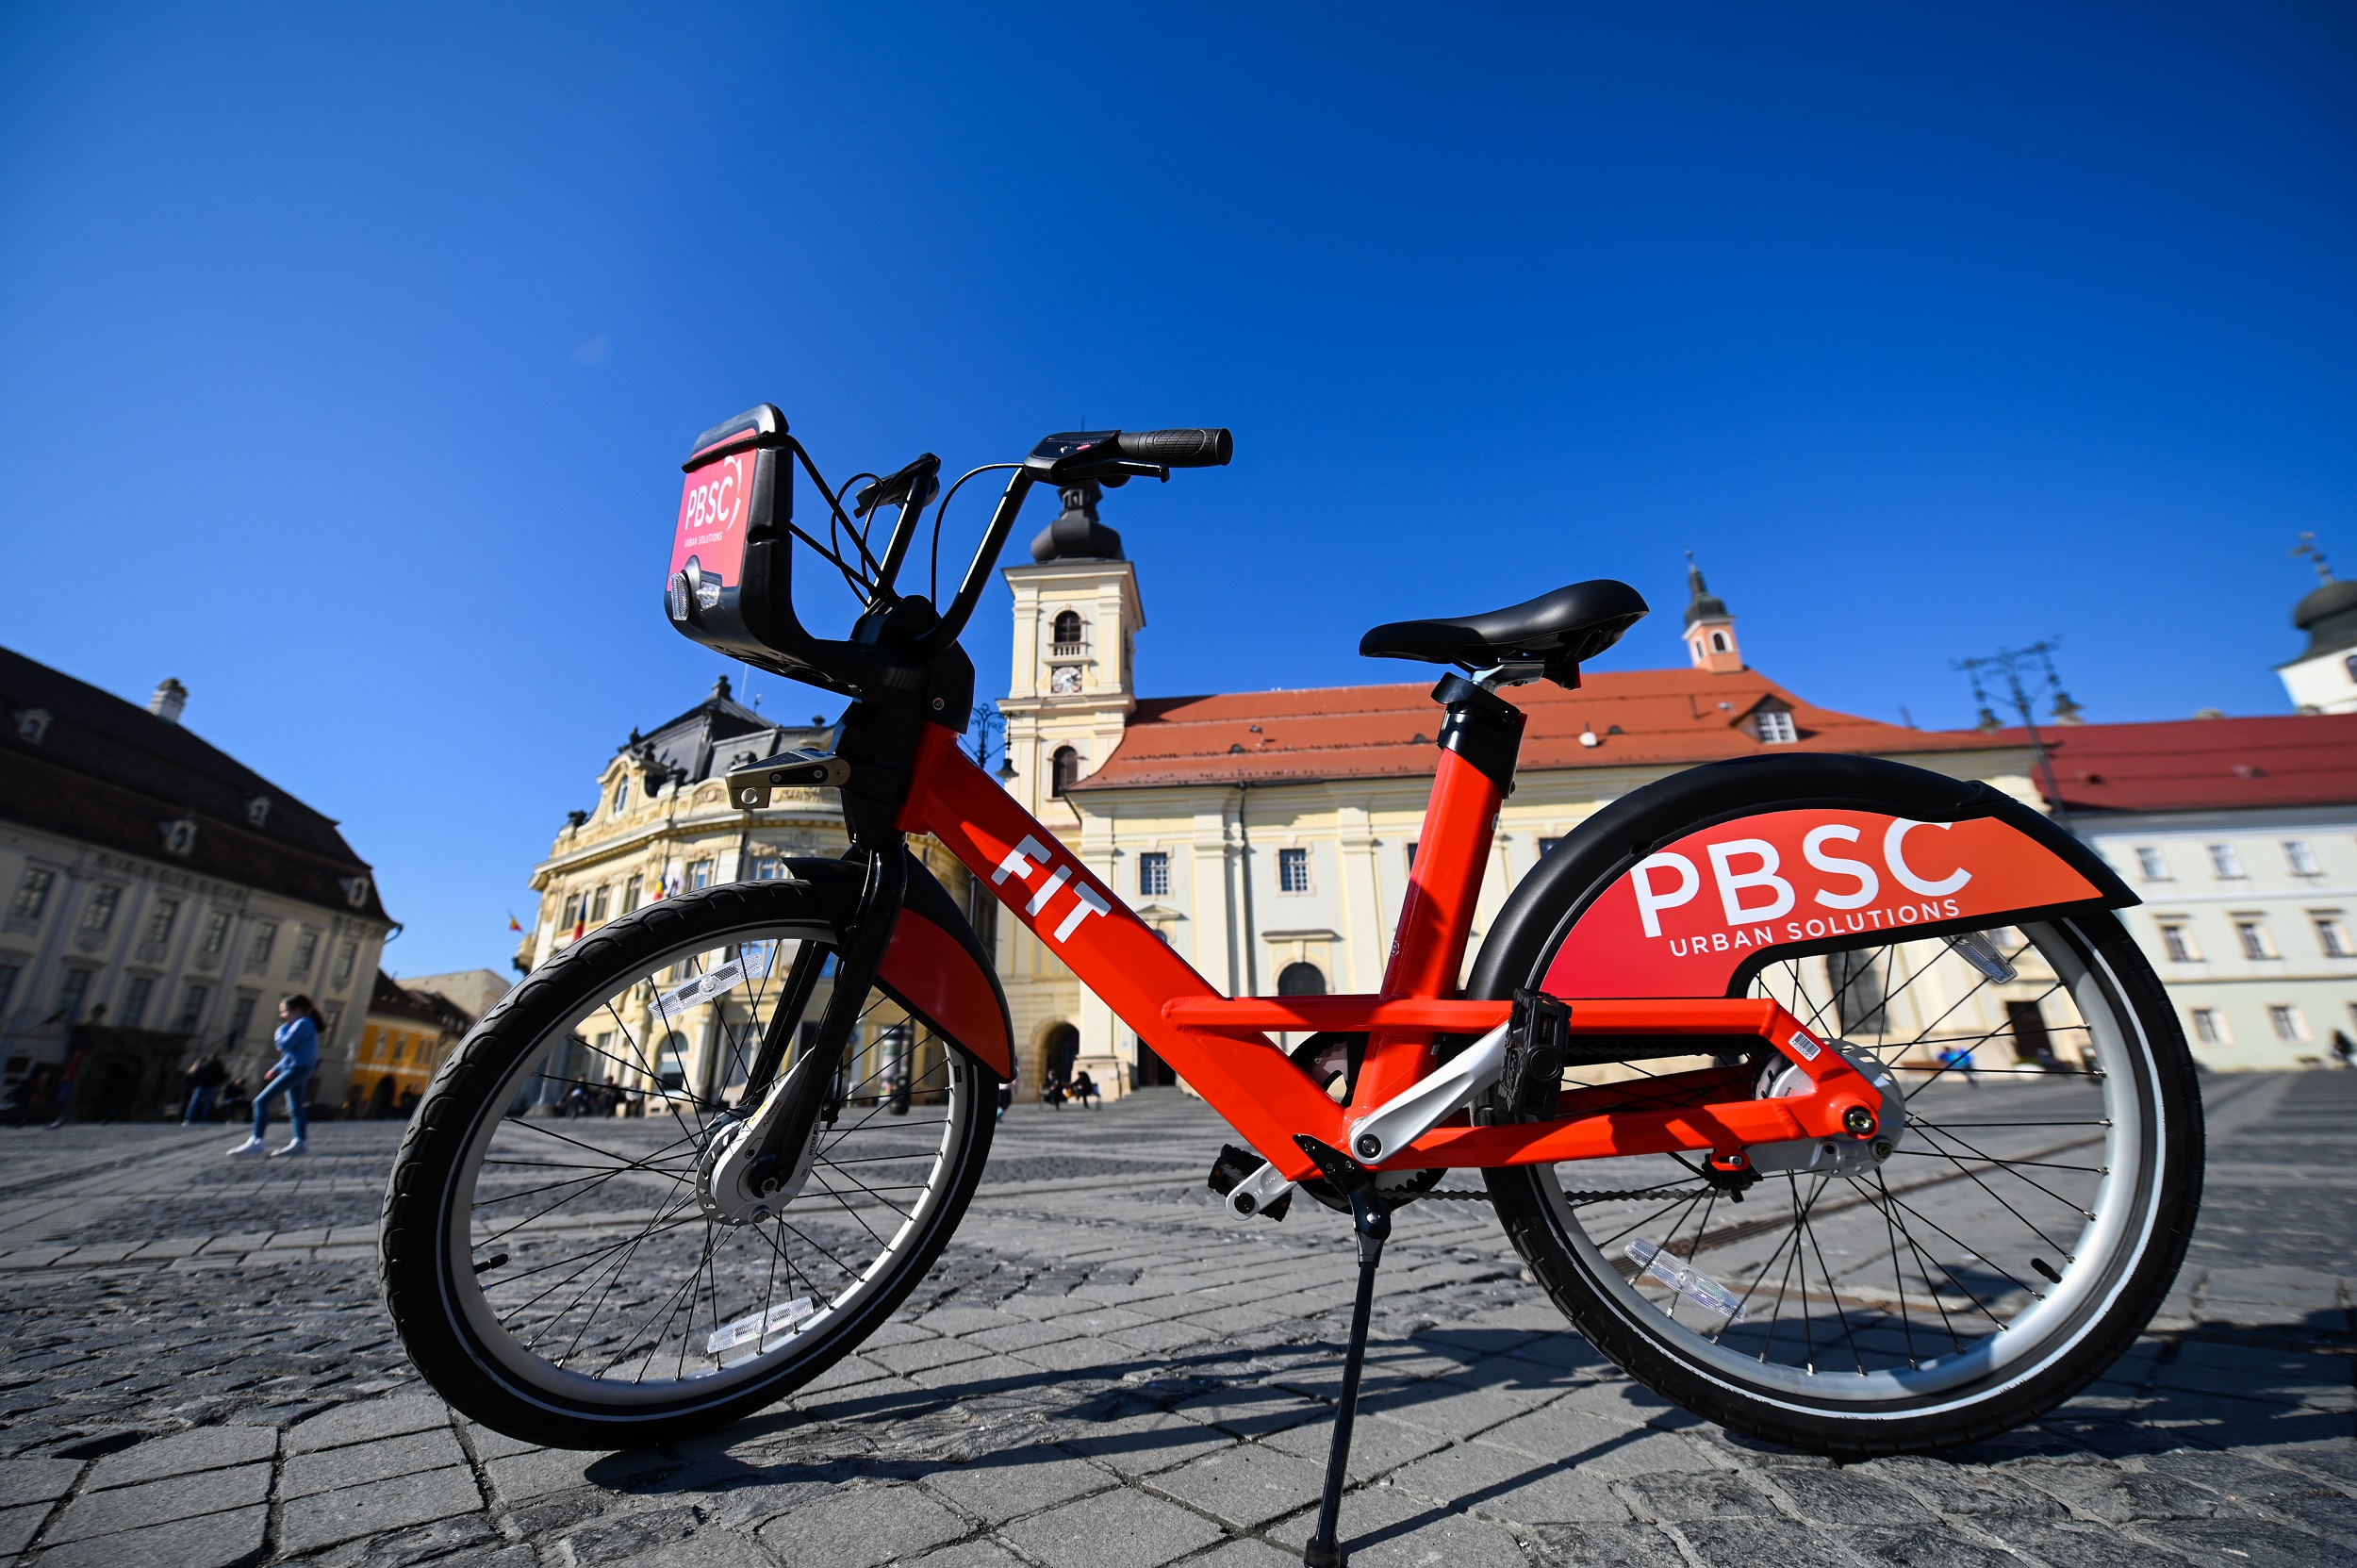 Primăria Sibiu începe amenajarea a 44 de centre publice pentru închirieri de biciclete